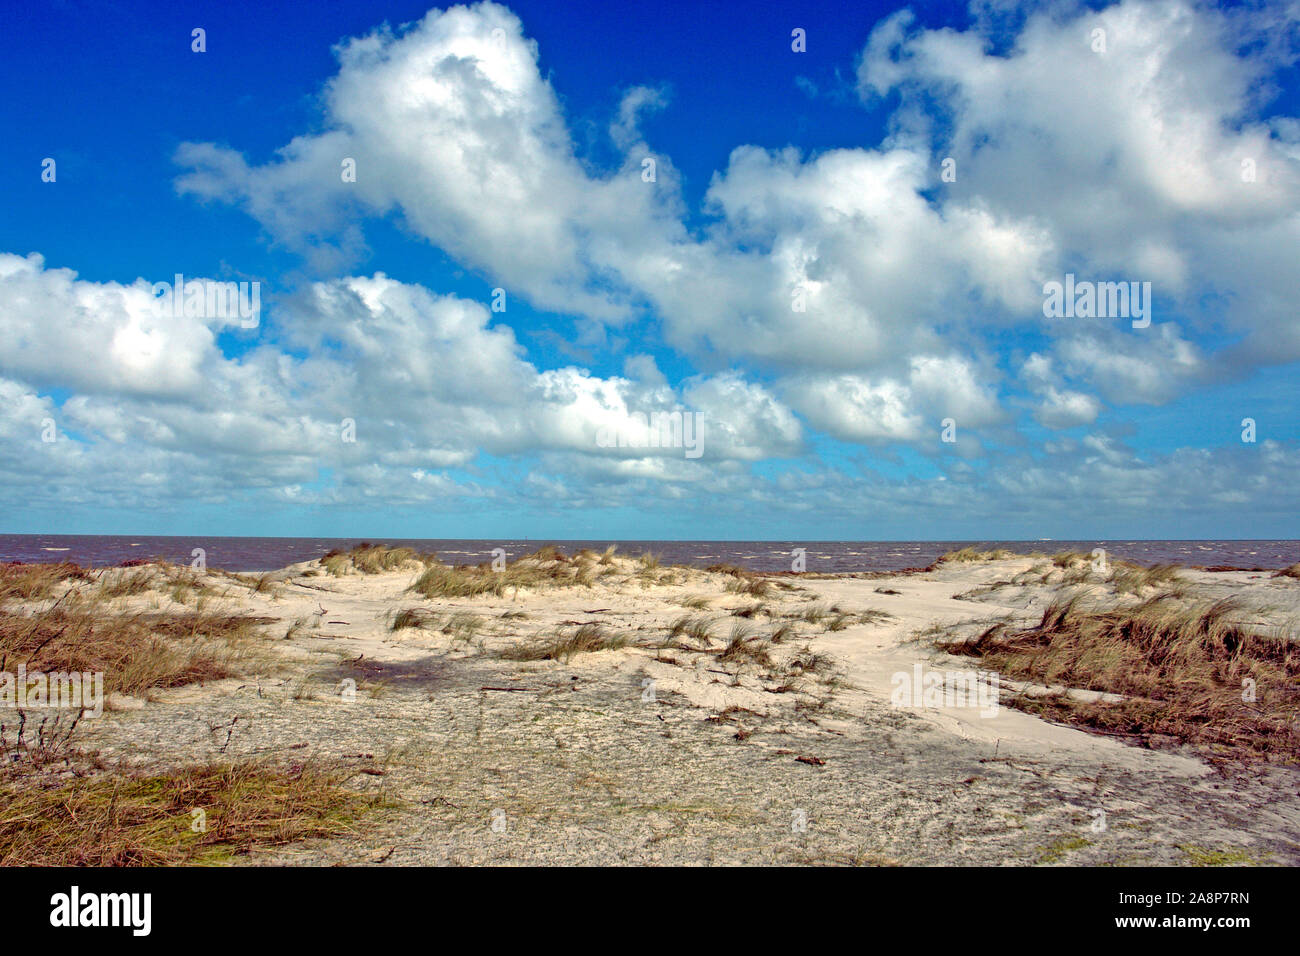 Wolkenhimmel, Cumulus Wolken, blauer Himmel, Ostfriesland, Ostfriesische Inseln, Nordseeküste, Sandstrand, Stock Photo